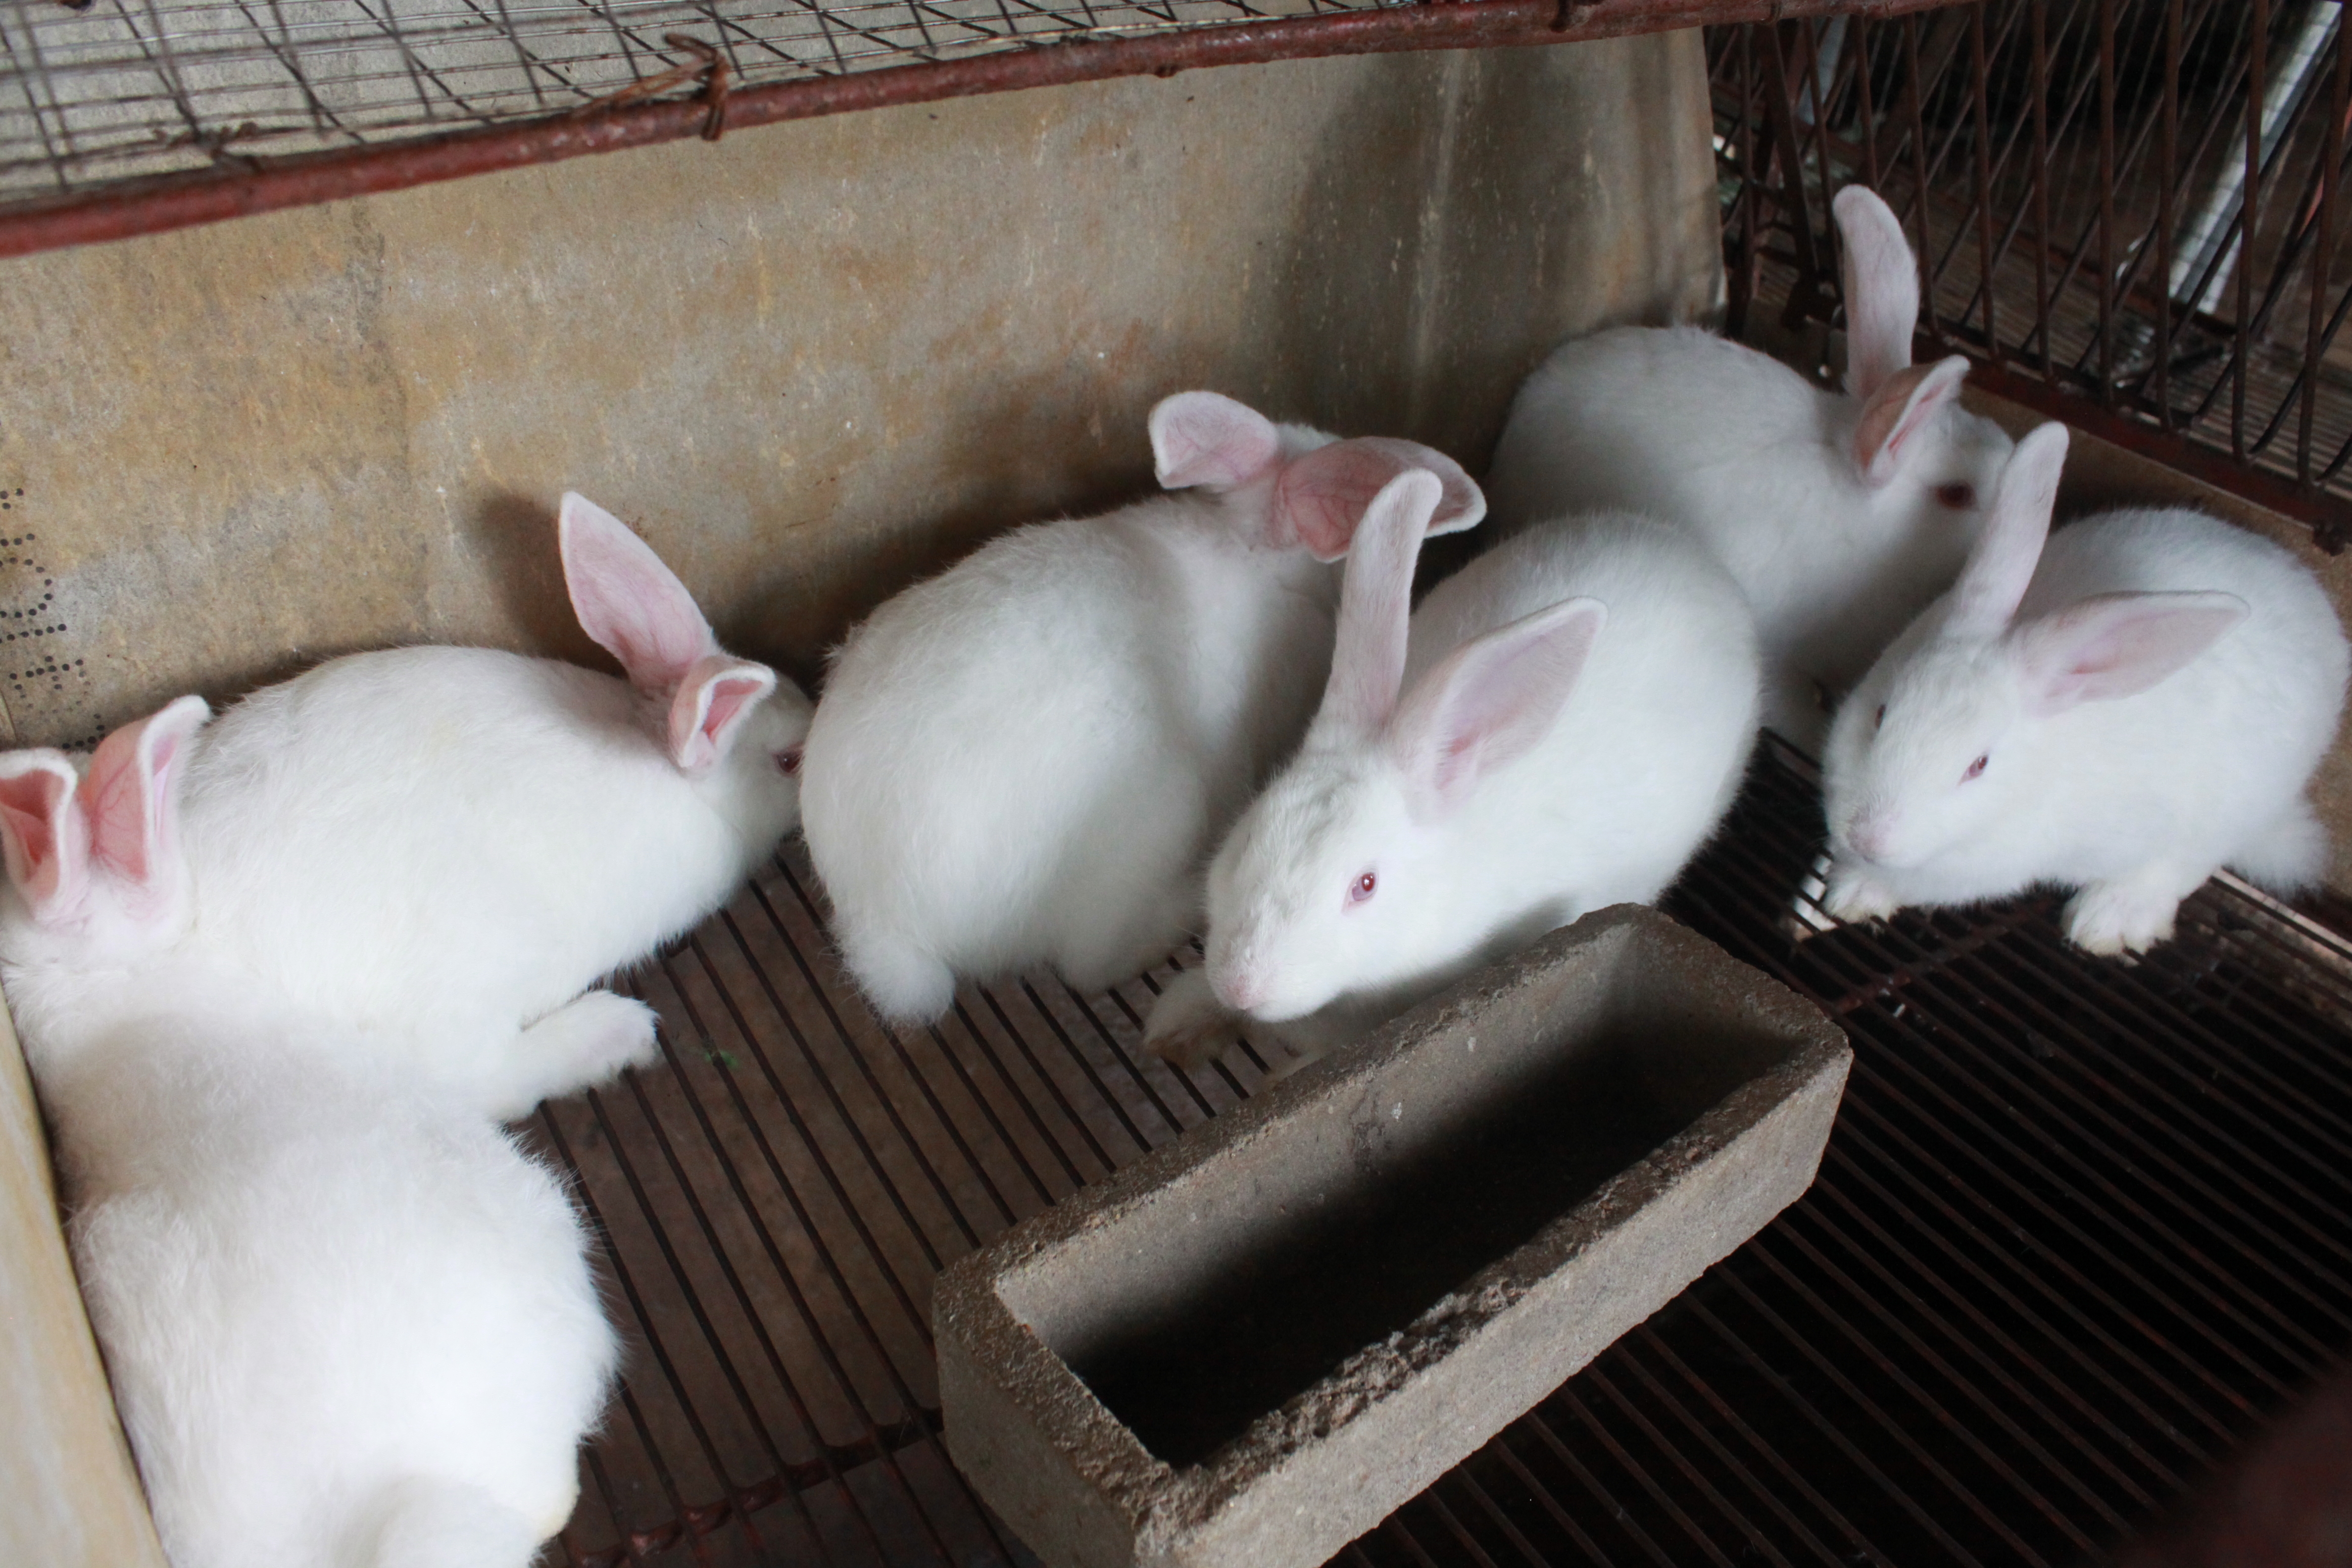 Để nuôi thỏ thành công cần phải nắm vững các yêu cầu về kỹ thuật nuôi thỏ sinh sản một cách từng bước, khoa học. Ảnh minh họa